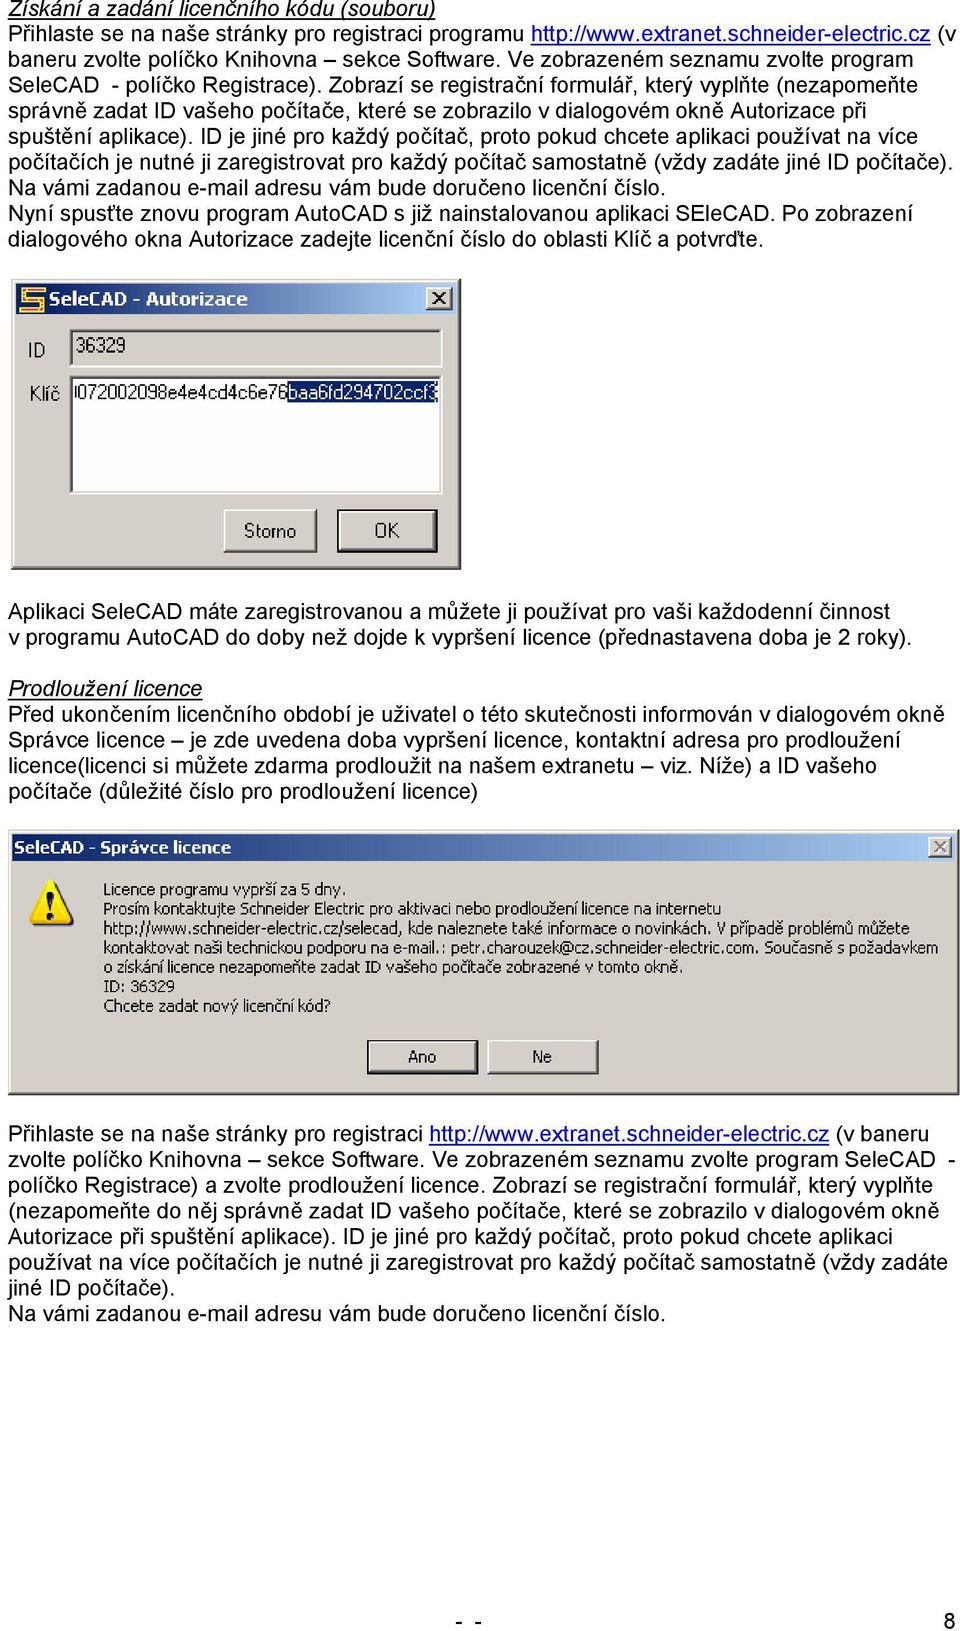 Zobrazí se registrační formulář, který vyplňte (nezapomeňte správně zadat ID vašeho počítače, které se zobrazilo v dialogovém okně Autorizace při spuštění aplikace).